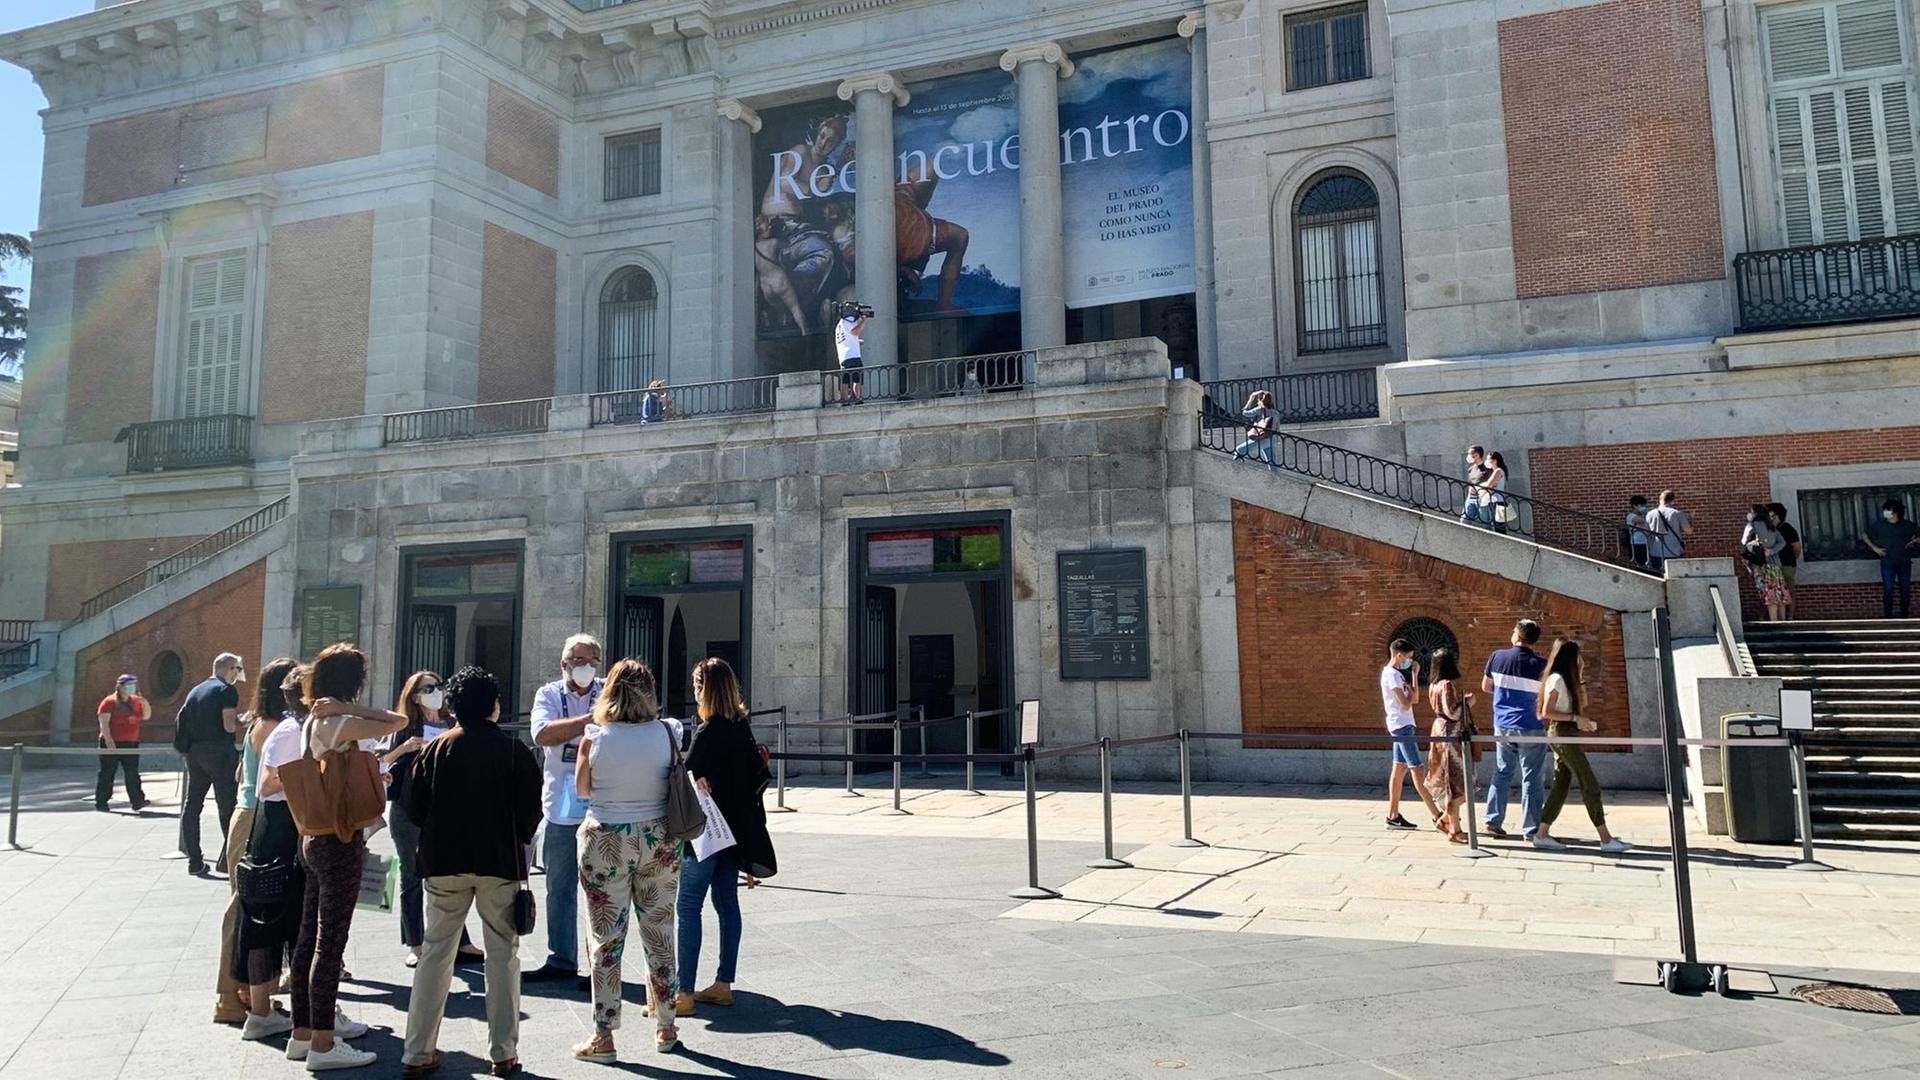 Spanien, Madrid: Menschen tragen Nasen-Mund-Schutzmaske vor dem Eingang des Prado Museums